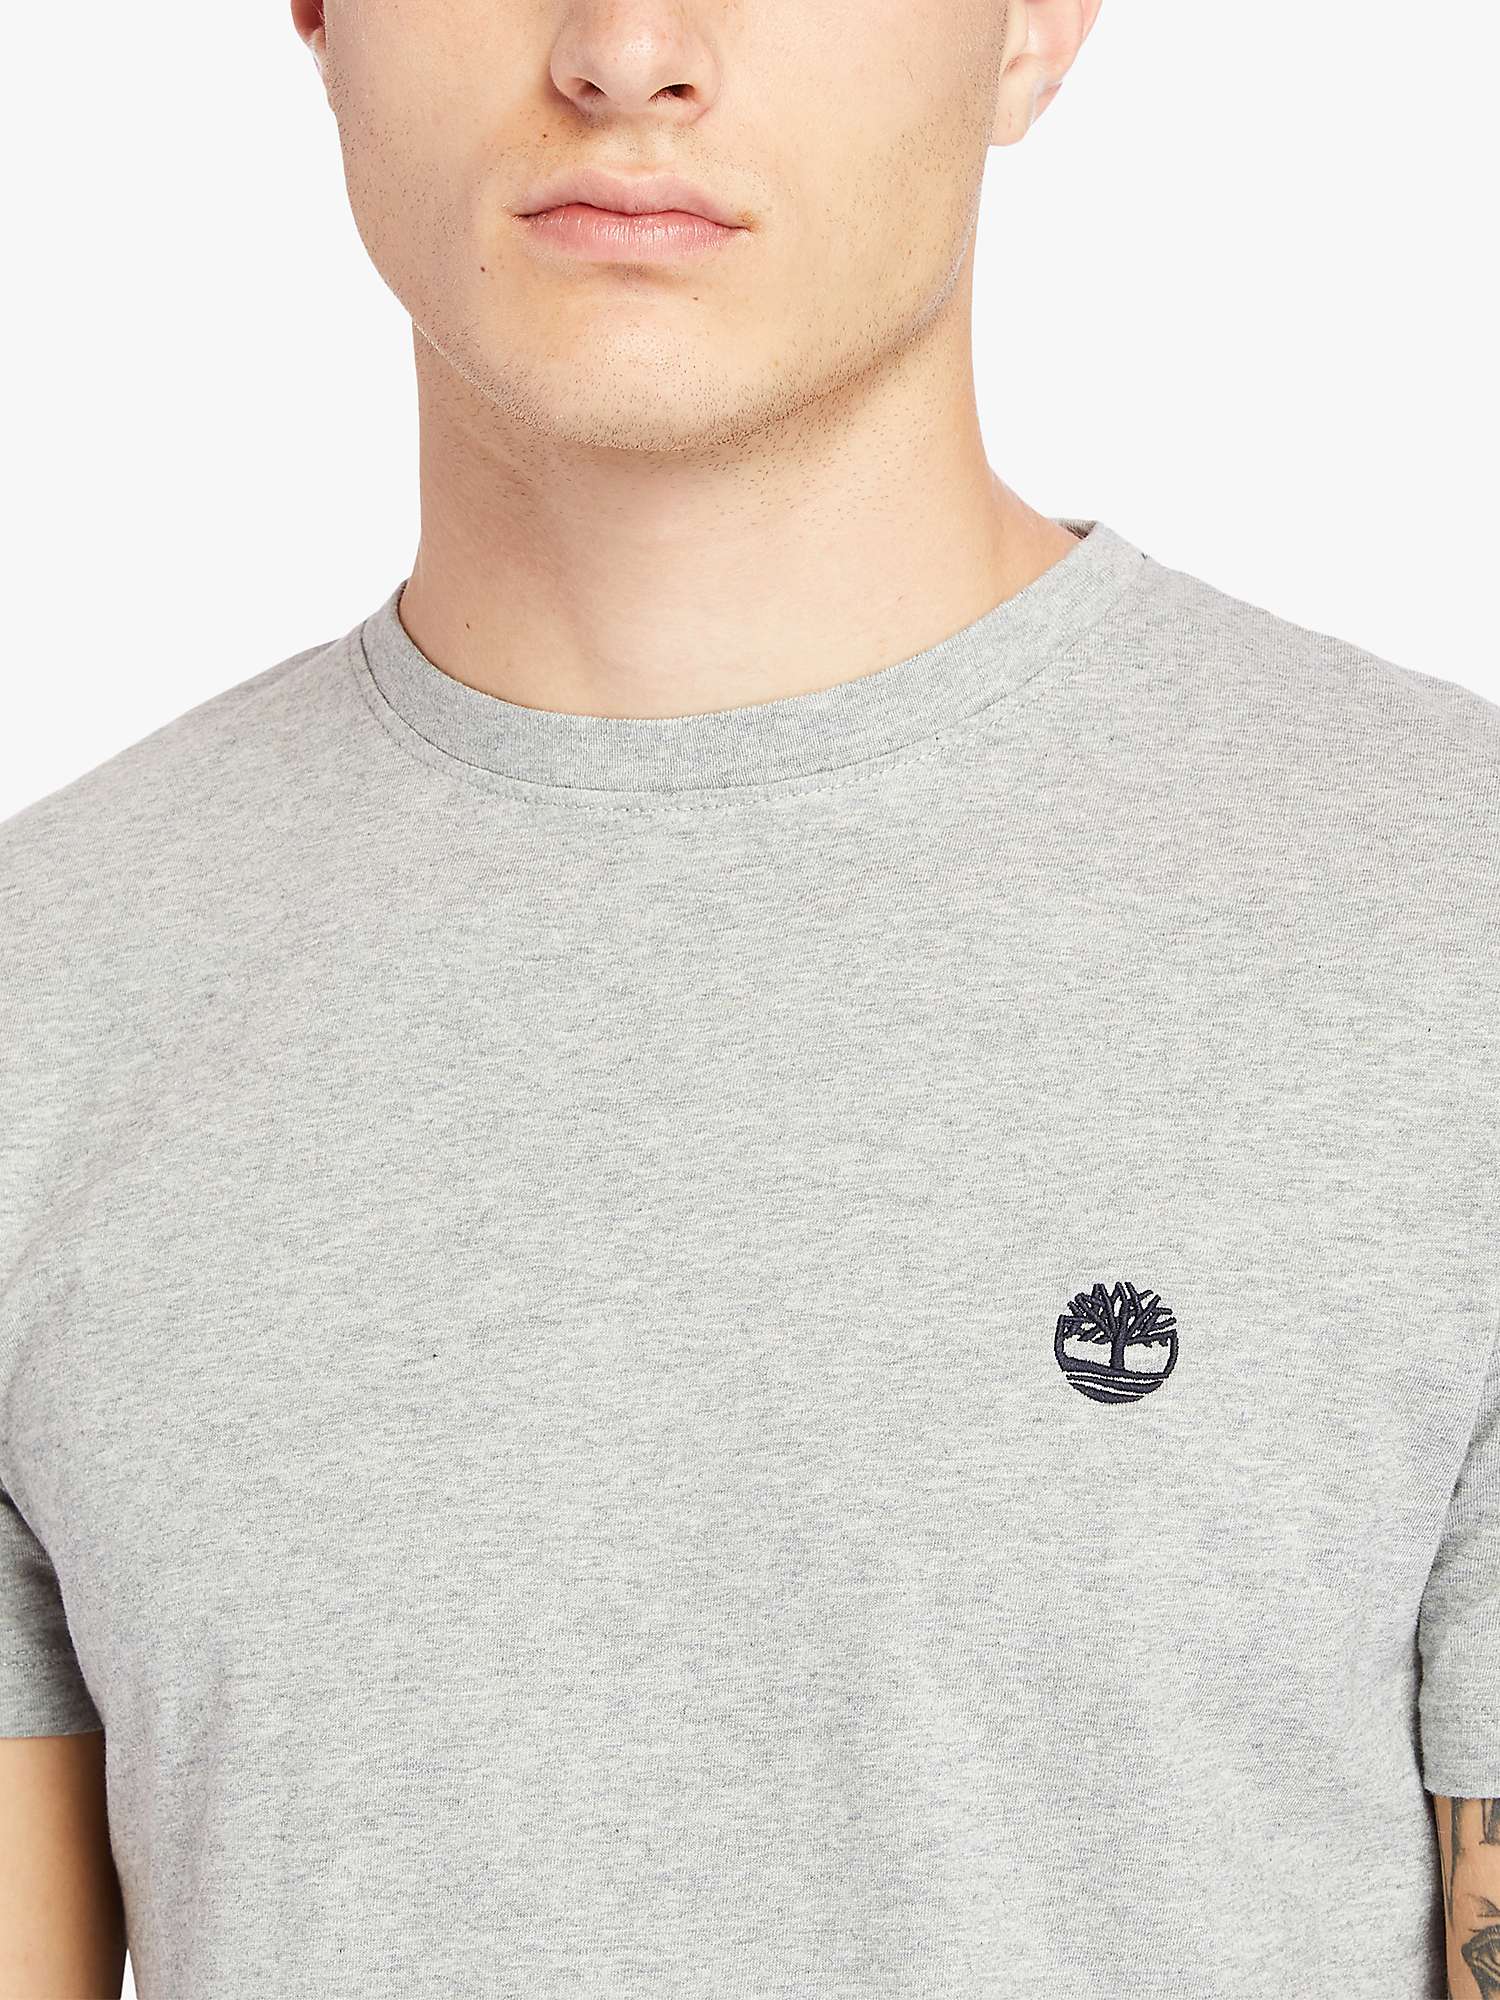 Timberland Dunstan Short Sleeve Logo T-Shirt, Grey at John Lewis & Partners